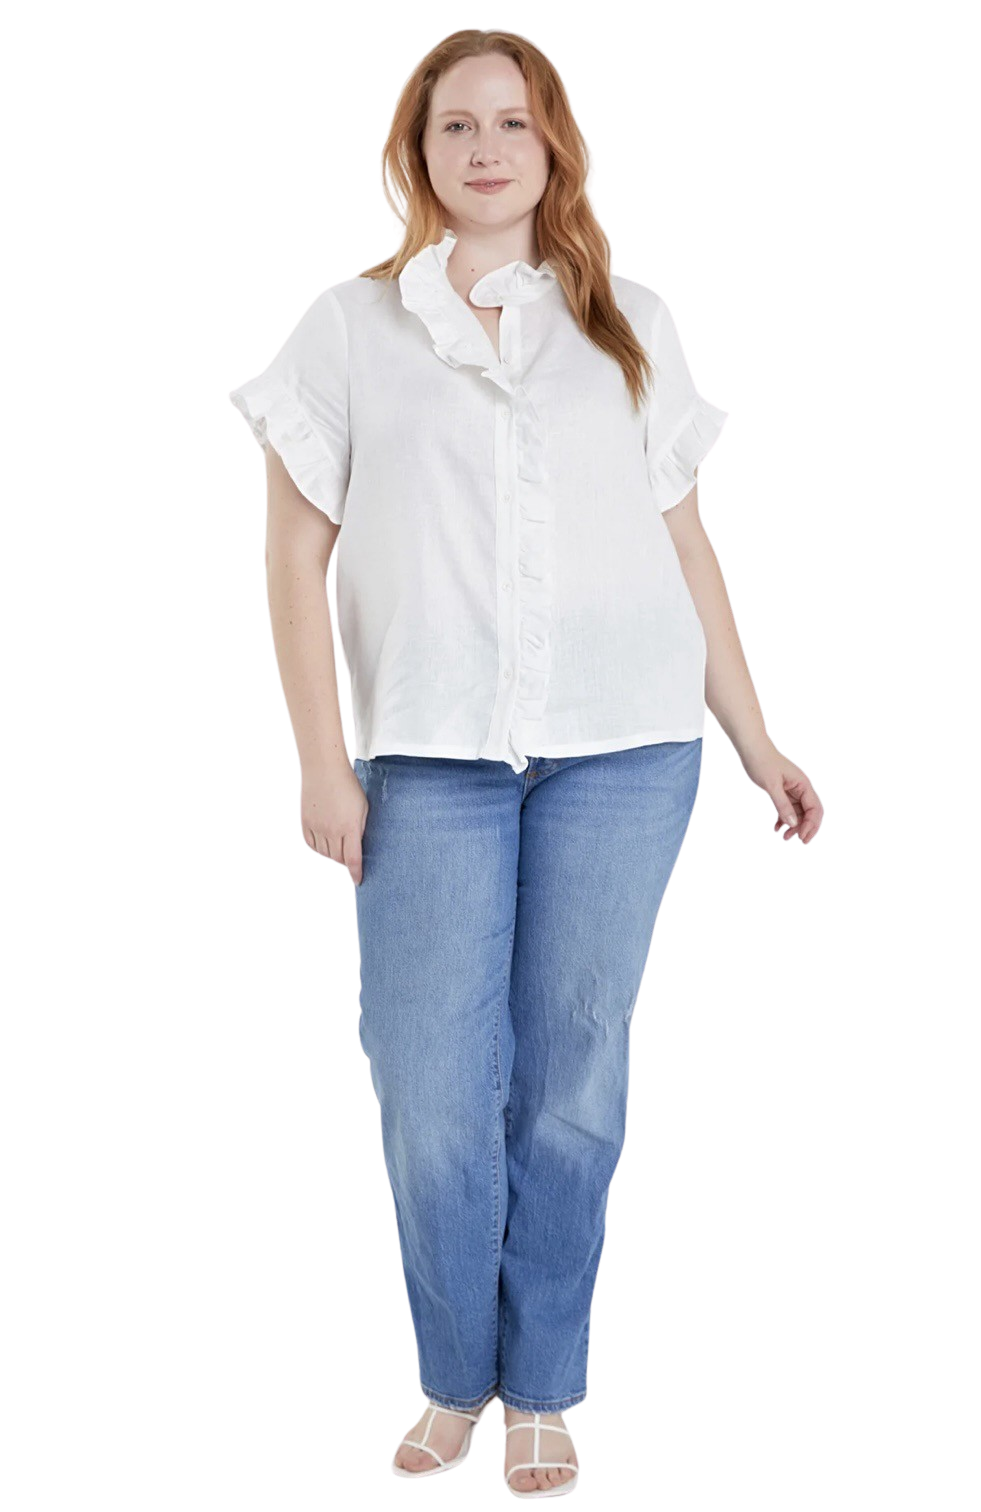 Apparel- English Factory Linen Ruffle Shirt